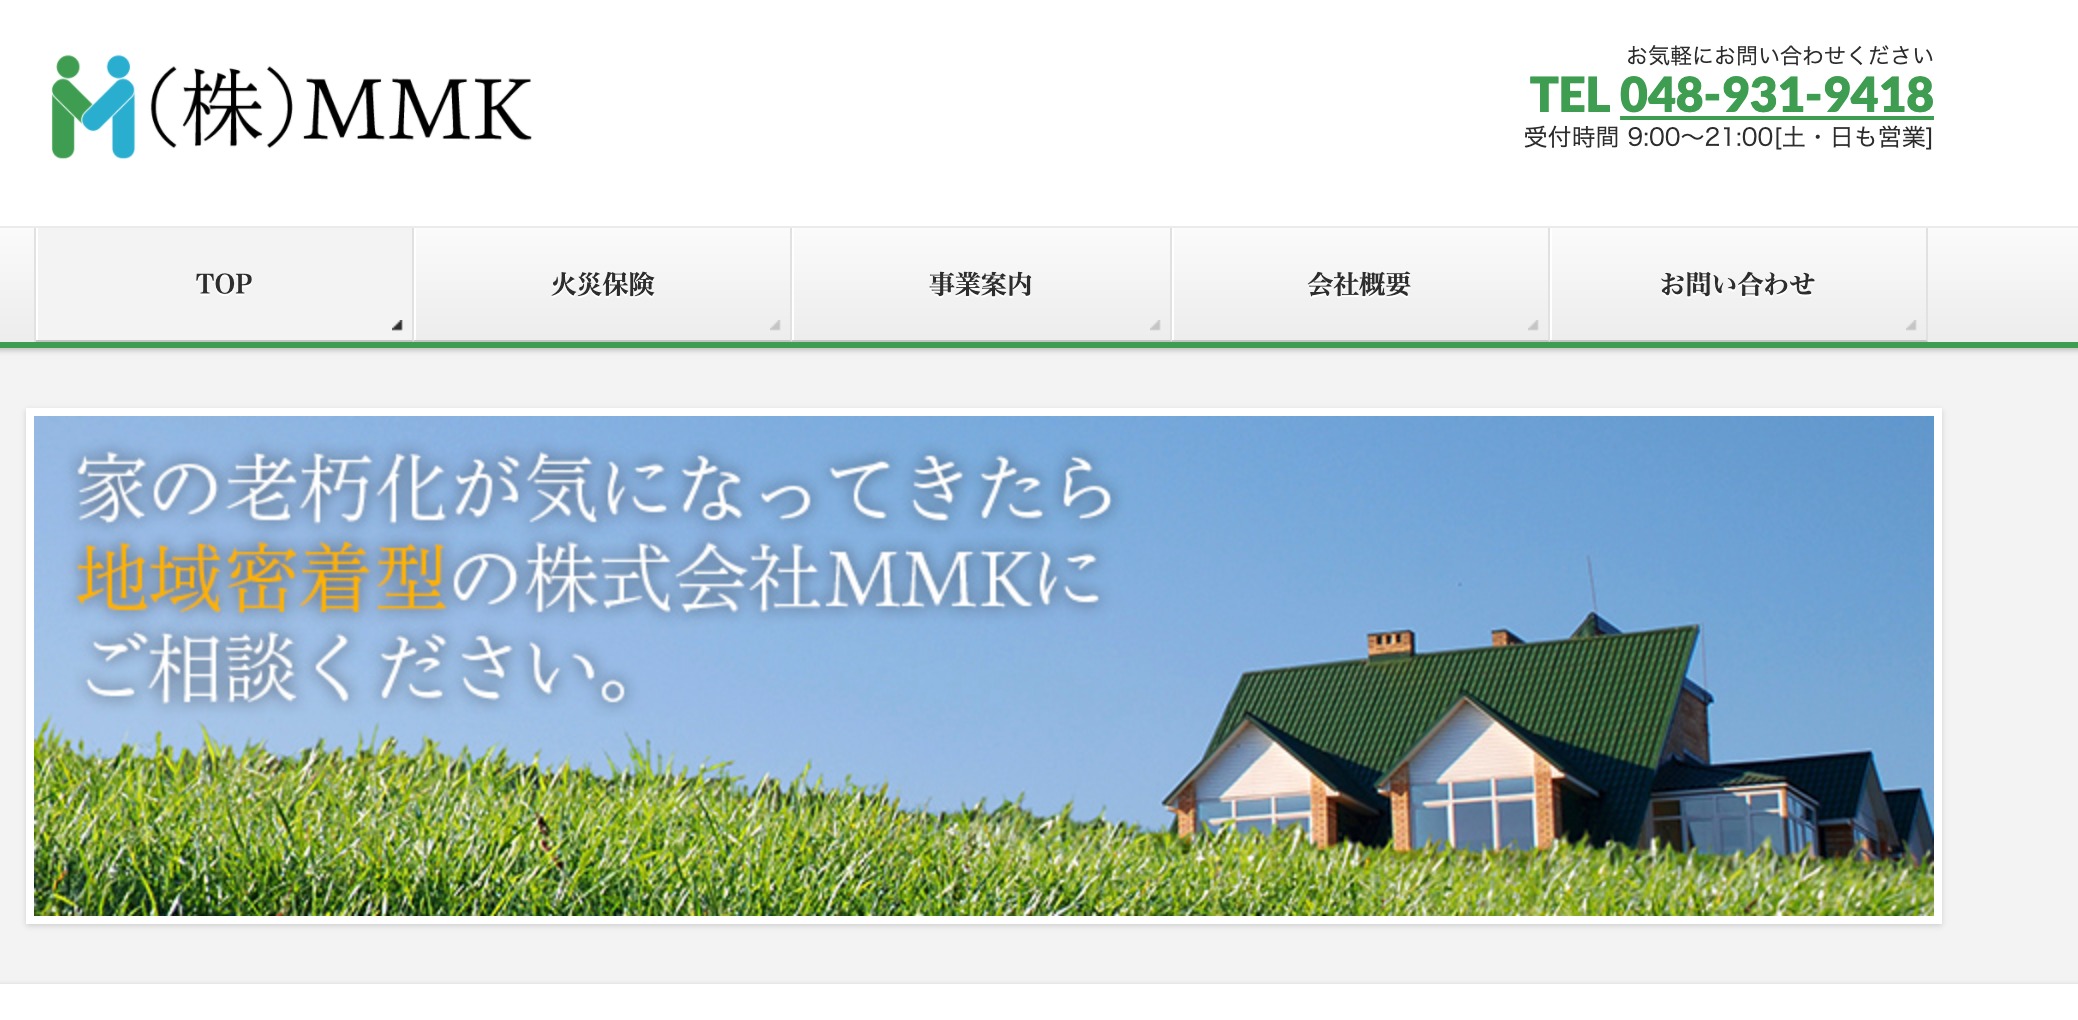 埼玉県の外壁塗装ランキング1位:株式会社MMK